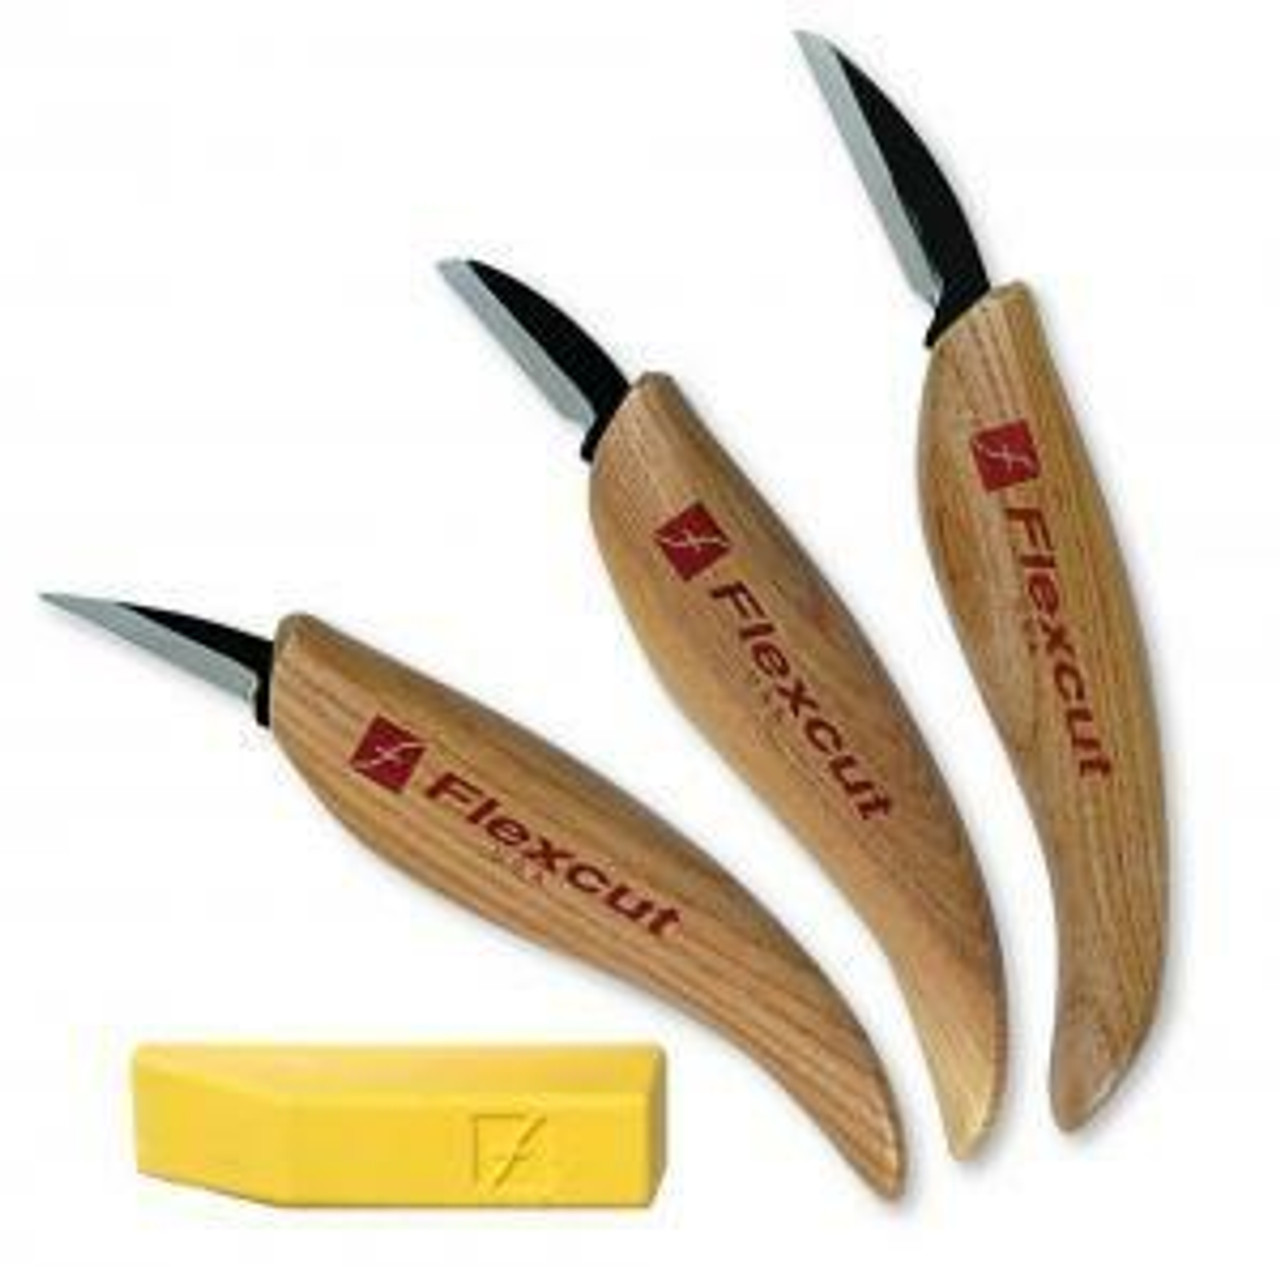 3-Knife Starter Carving Set